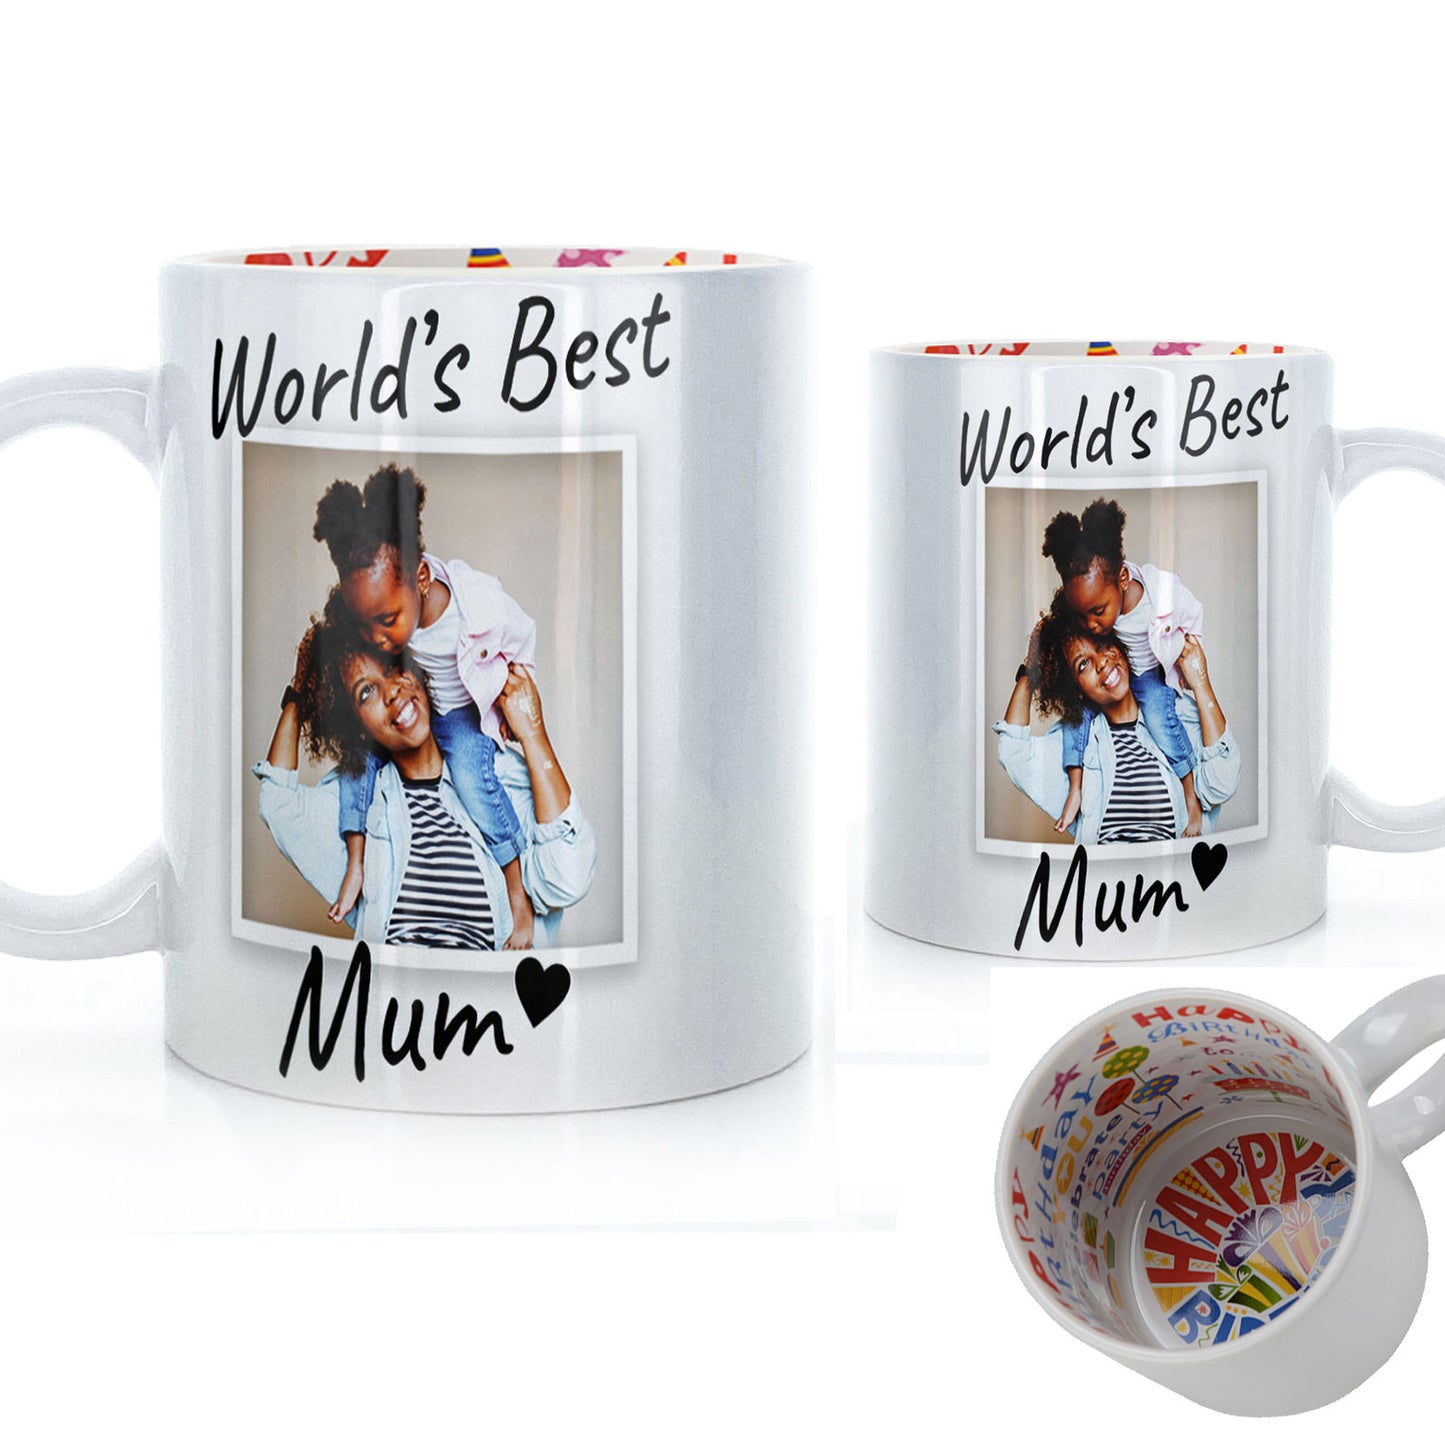 Personalised Mug with World’s Best Mum Polaroid Photo